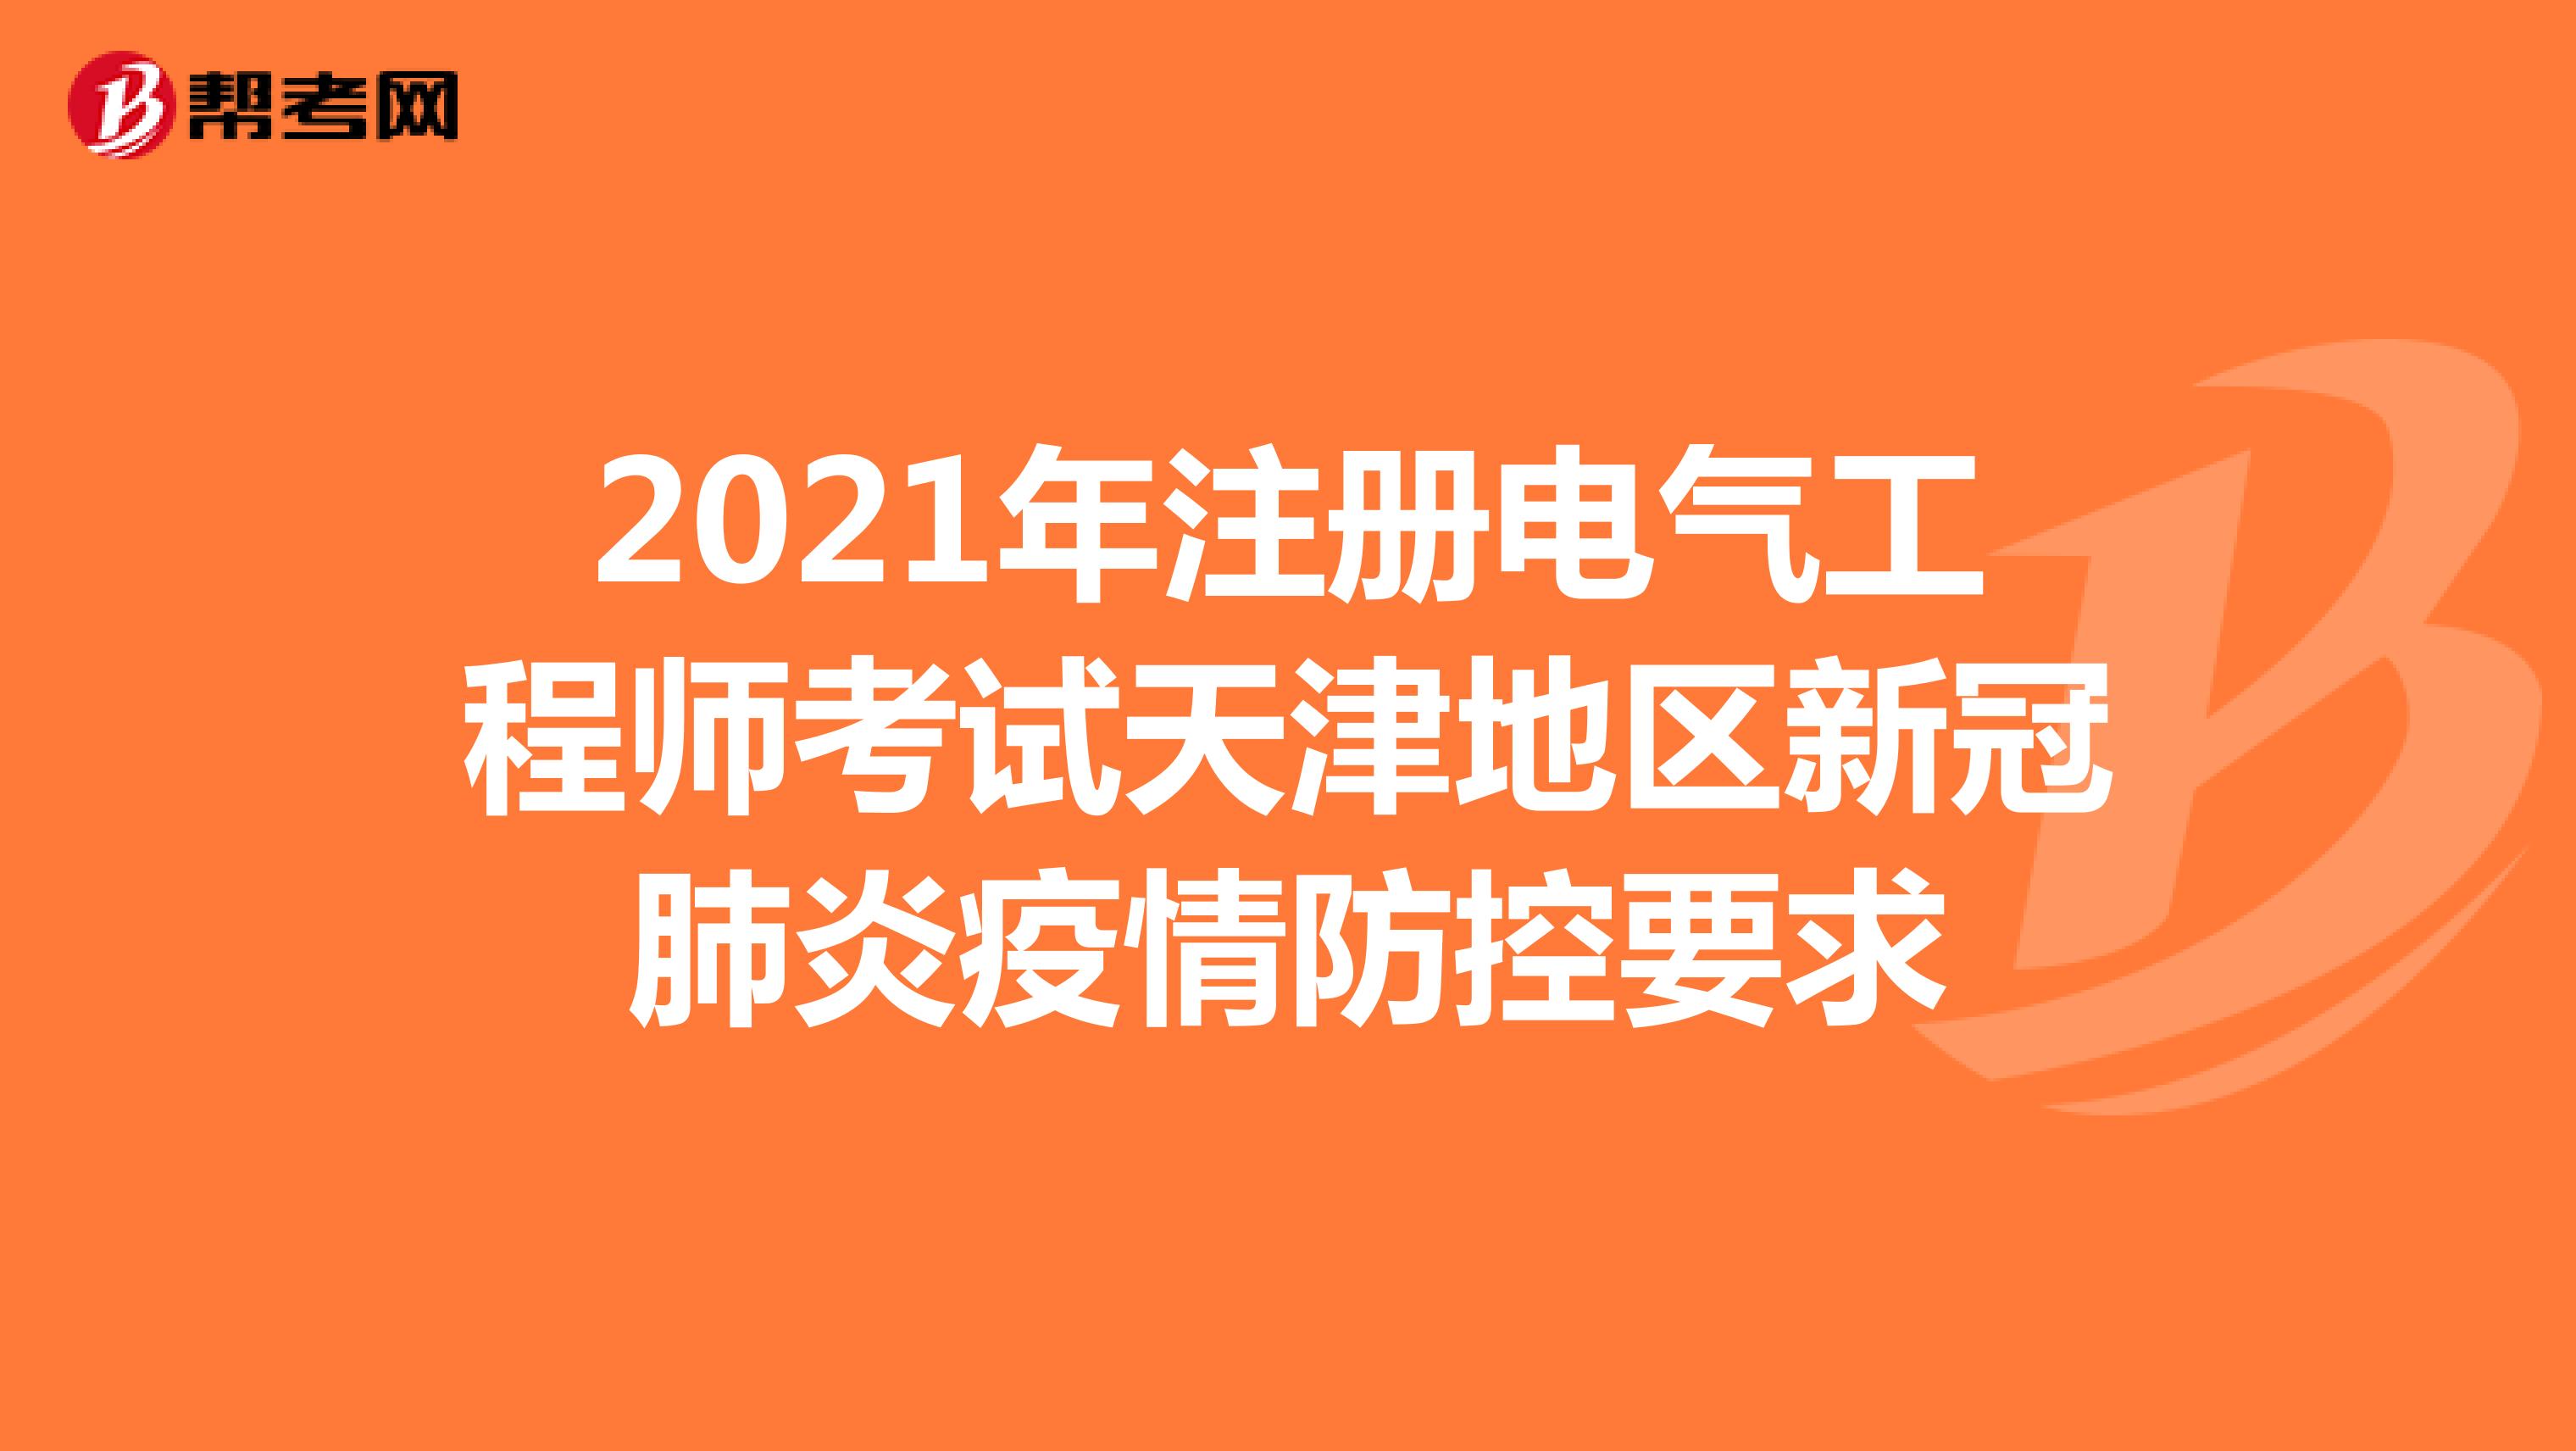 2021年注册电气工程师考试天津地区新冠肺炎疫情防控要求